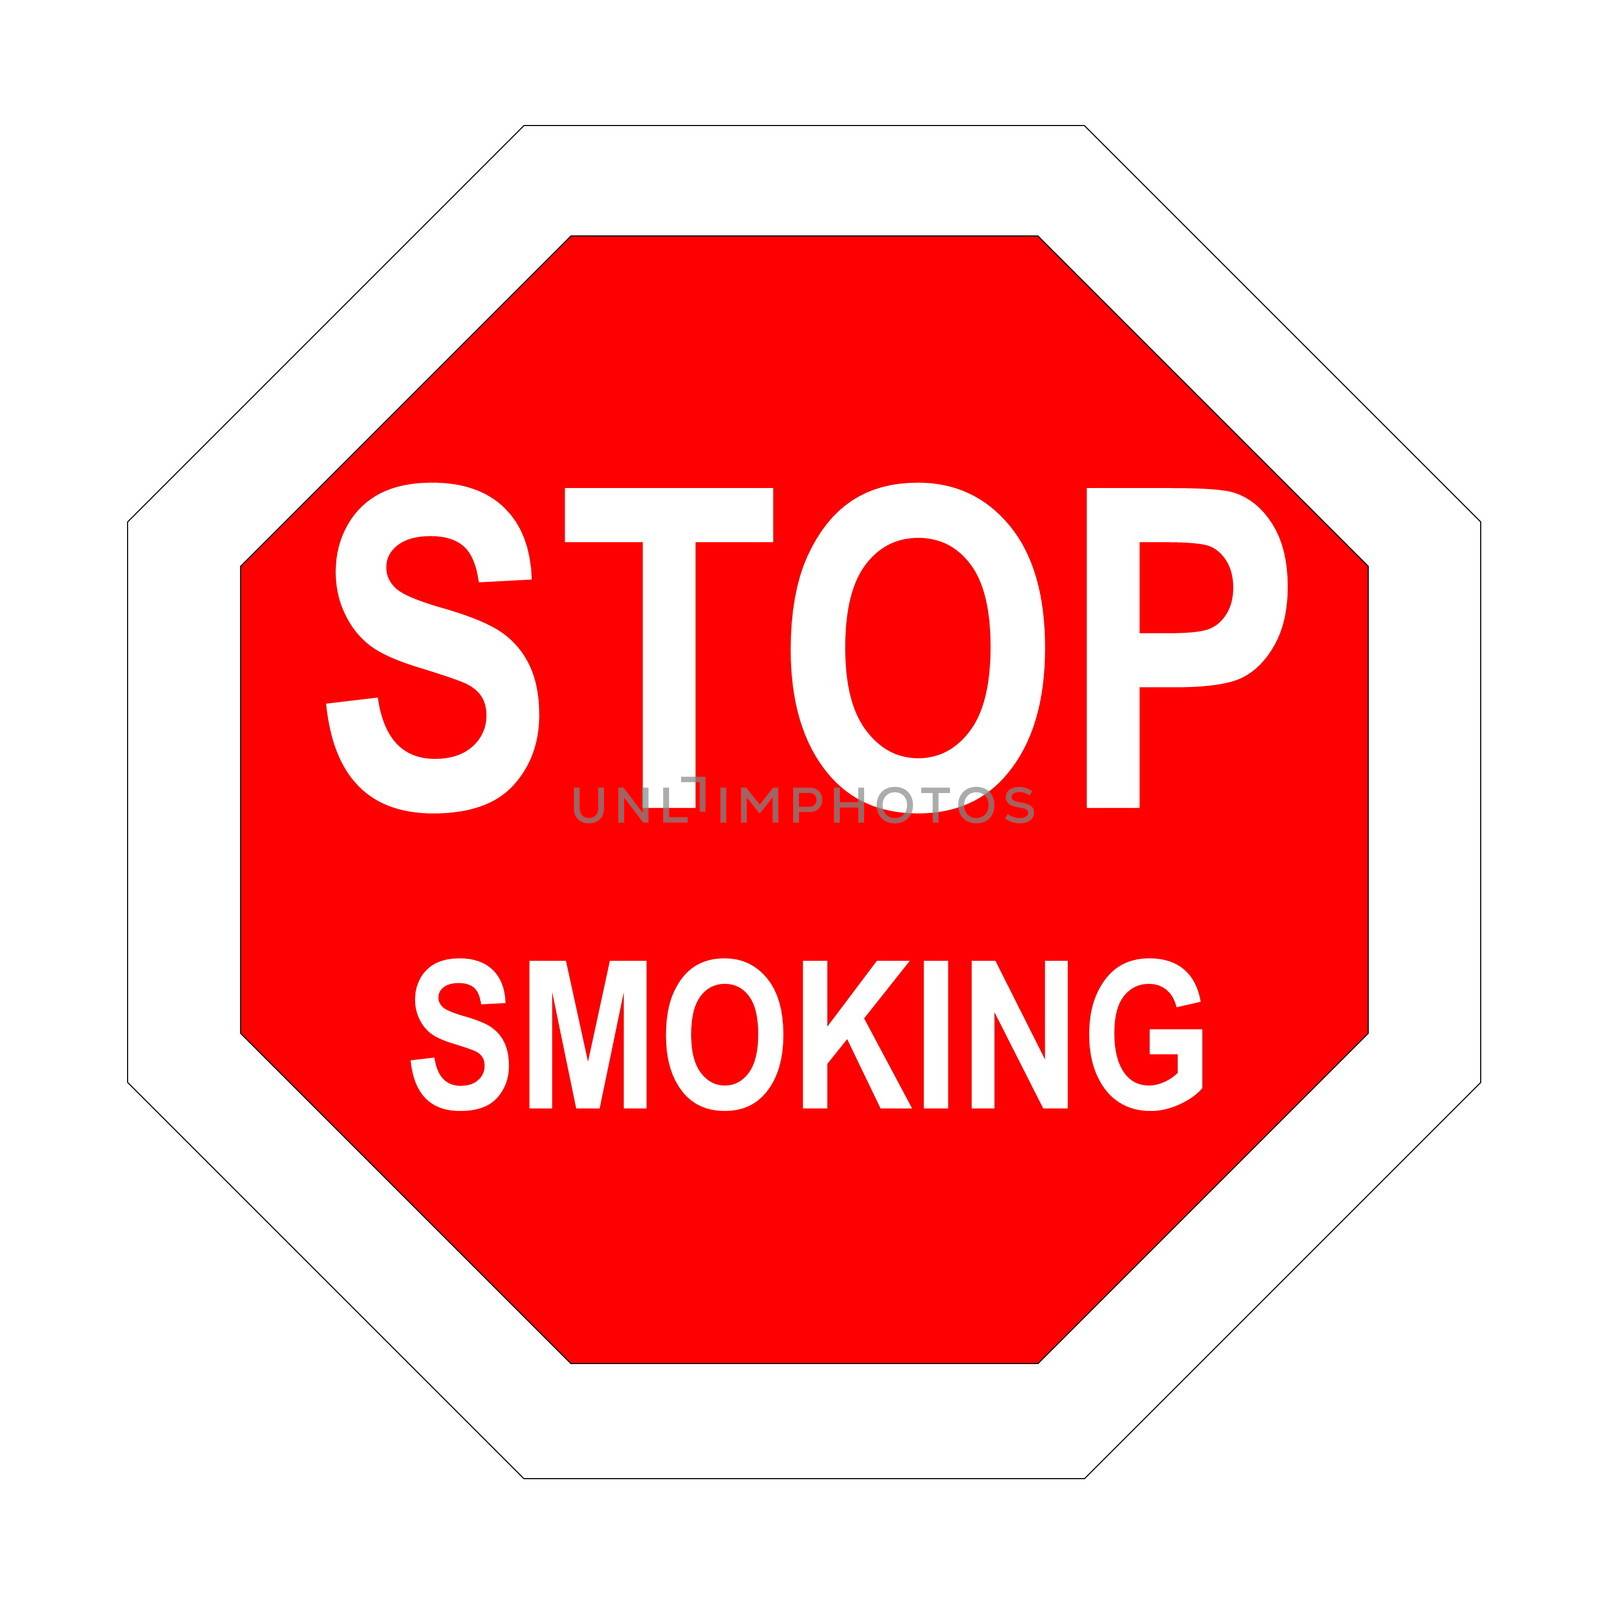 Stop smoking by Elenaphotos21